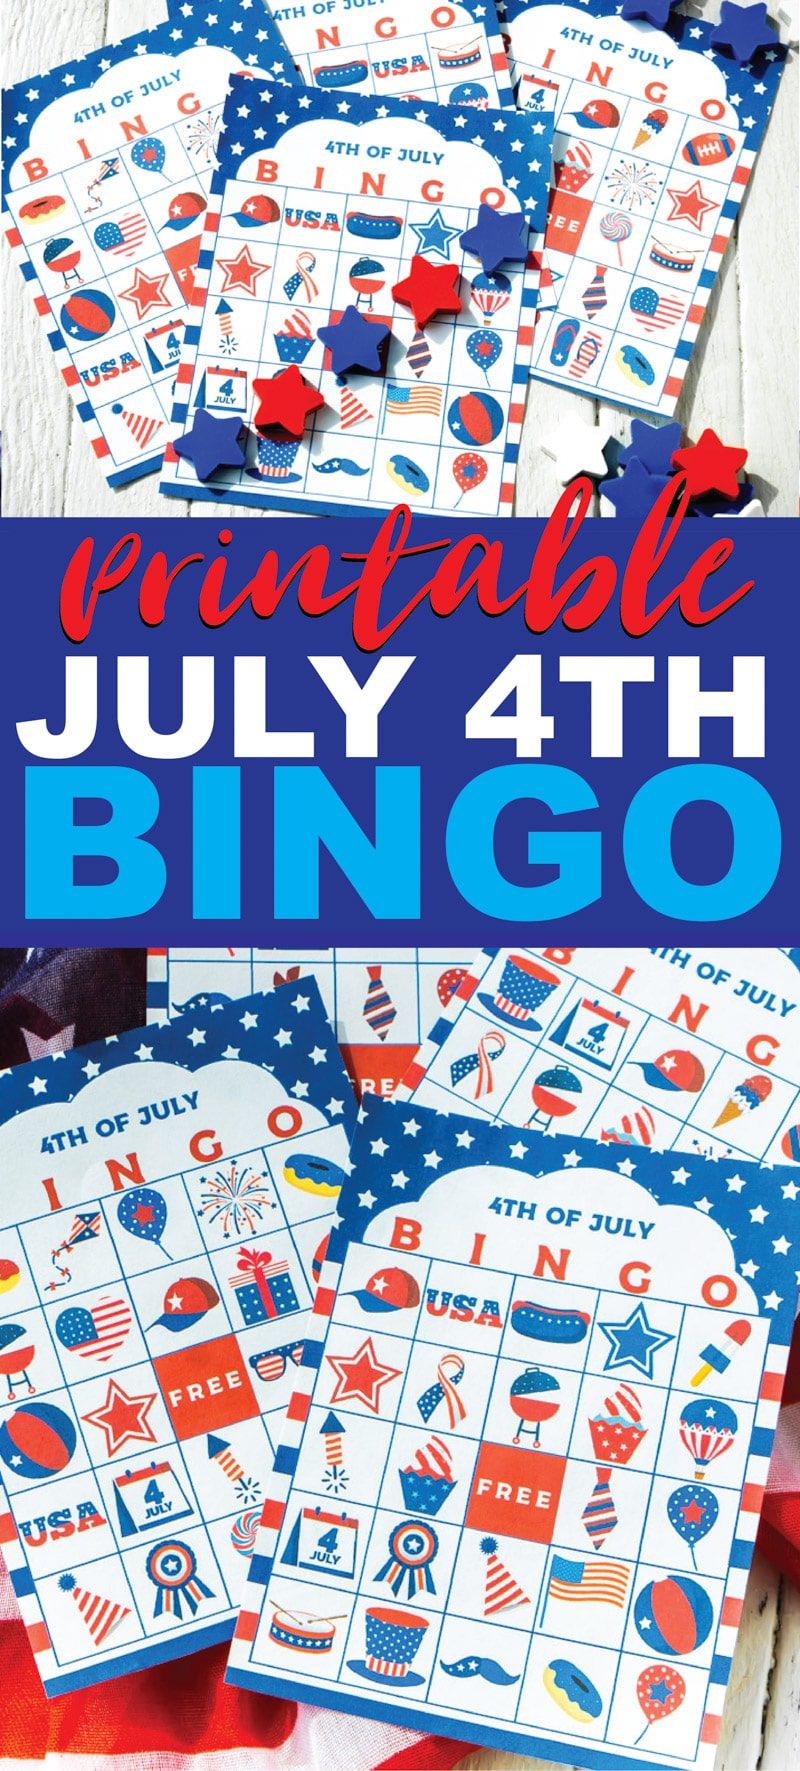 Šī 4. jūlija bingo spēle ir lieliski piemērota bērniem, pieaugušajiem vai pusaudžiem, lai spēlētu, gaidot uguņošanu! Vienkārši izdrukājiet bezmaksas izdrukājamās kartes, izdaliet marķierus un sāciet spēlēt! Viena no labākajām aktivitātēm gan iekštelpās, gan āra ballītēs!